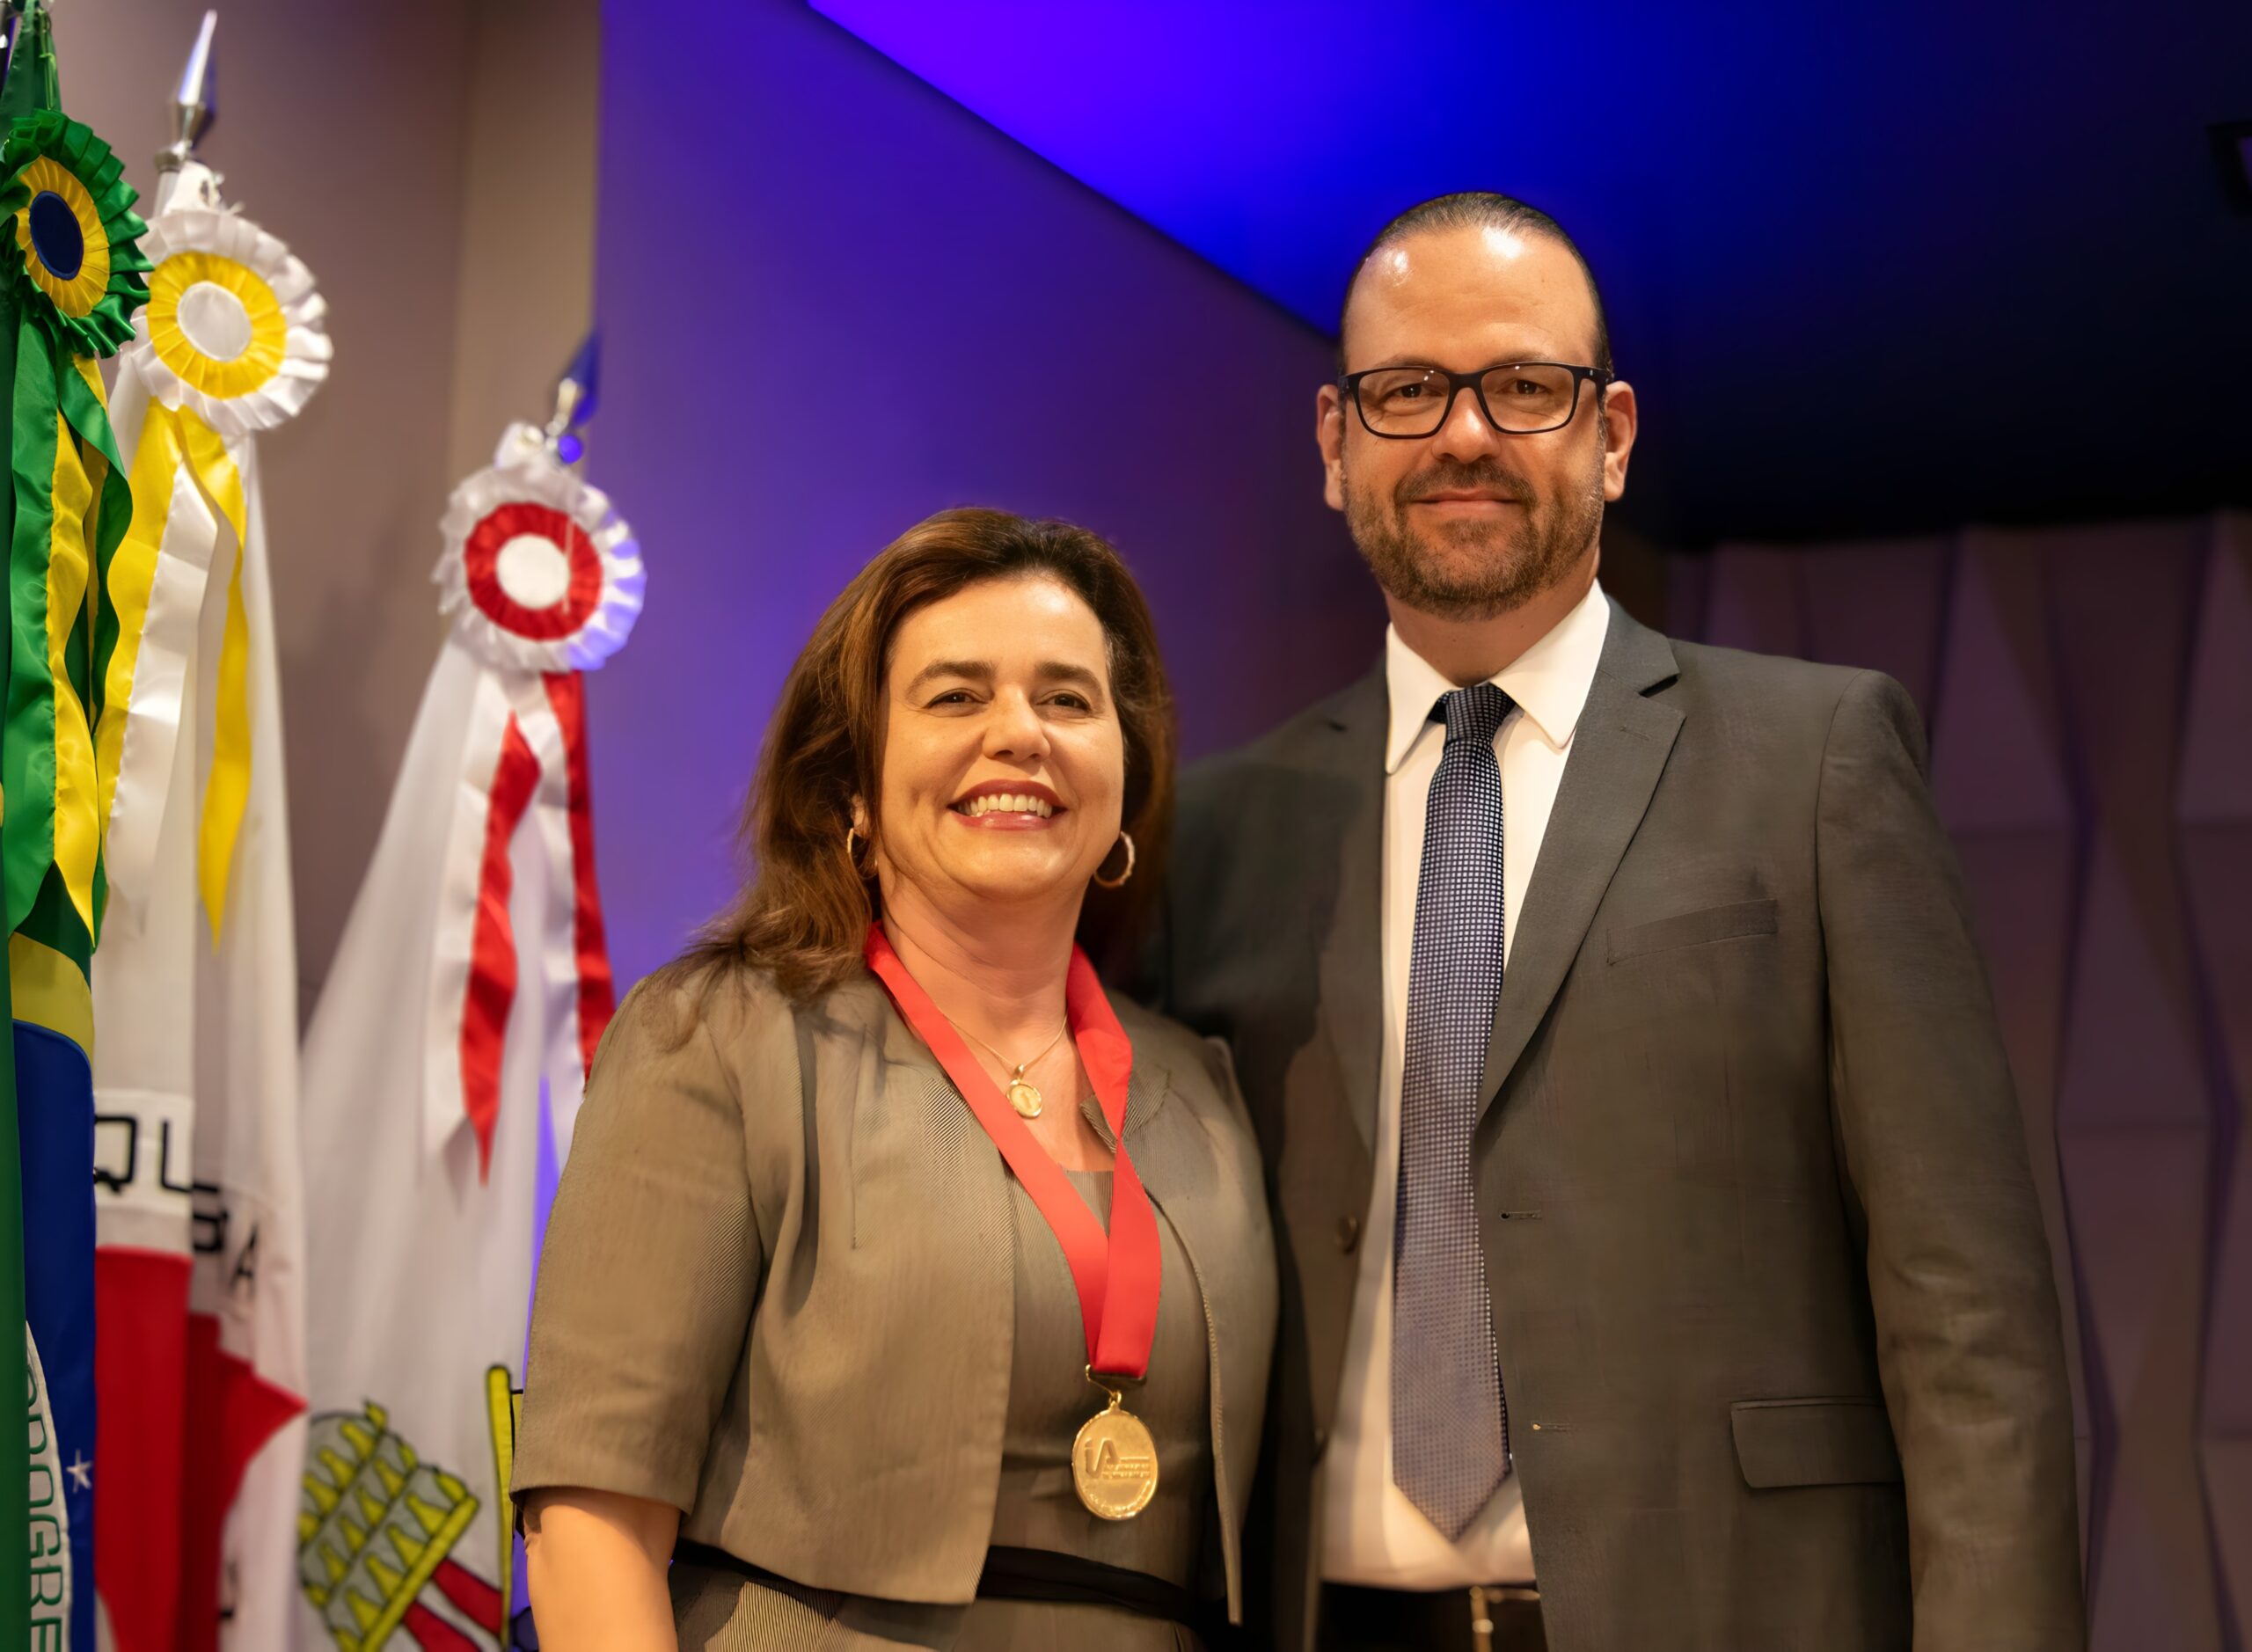 Fotografia colorida de um homem de terno, gravata e óculos e uma mulher com uma medalha do Instituto dos Advogados de Minas Gerais ao redor do pescoço.